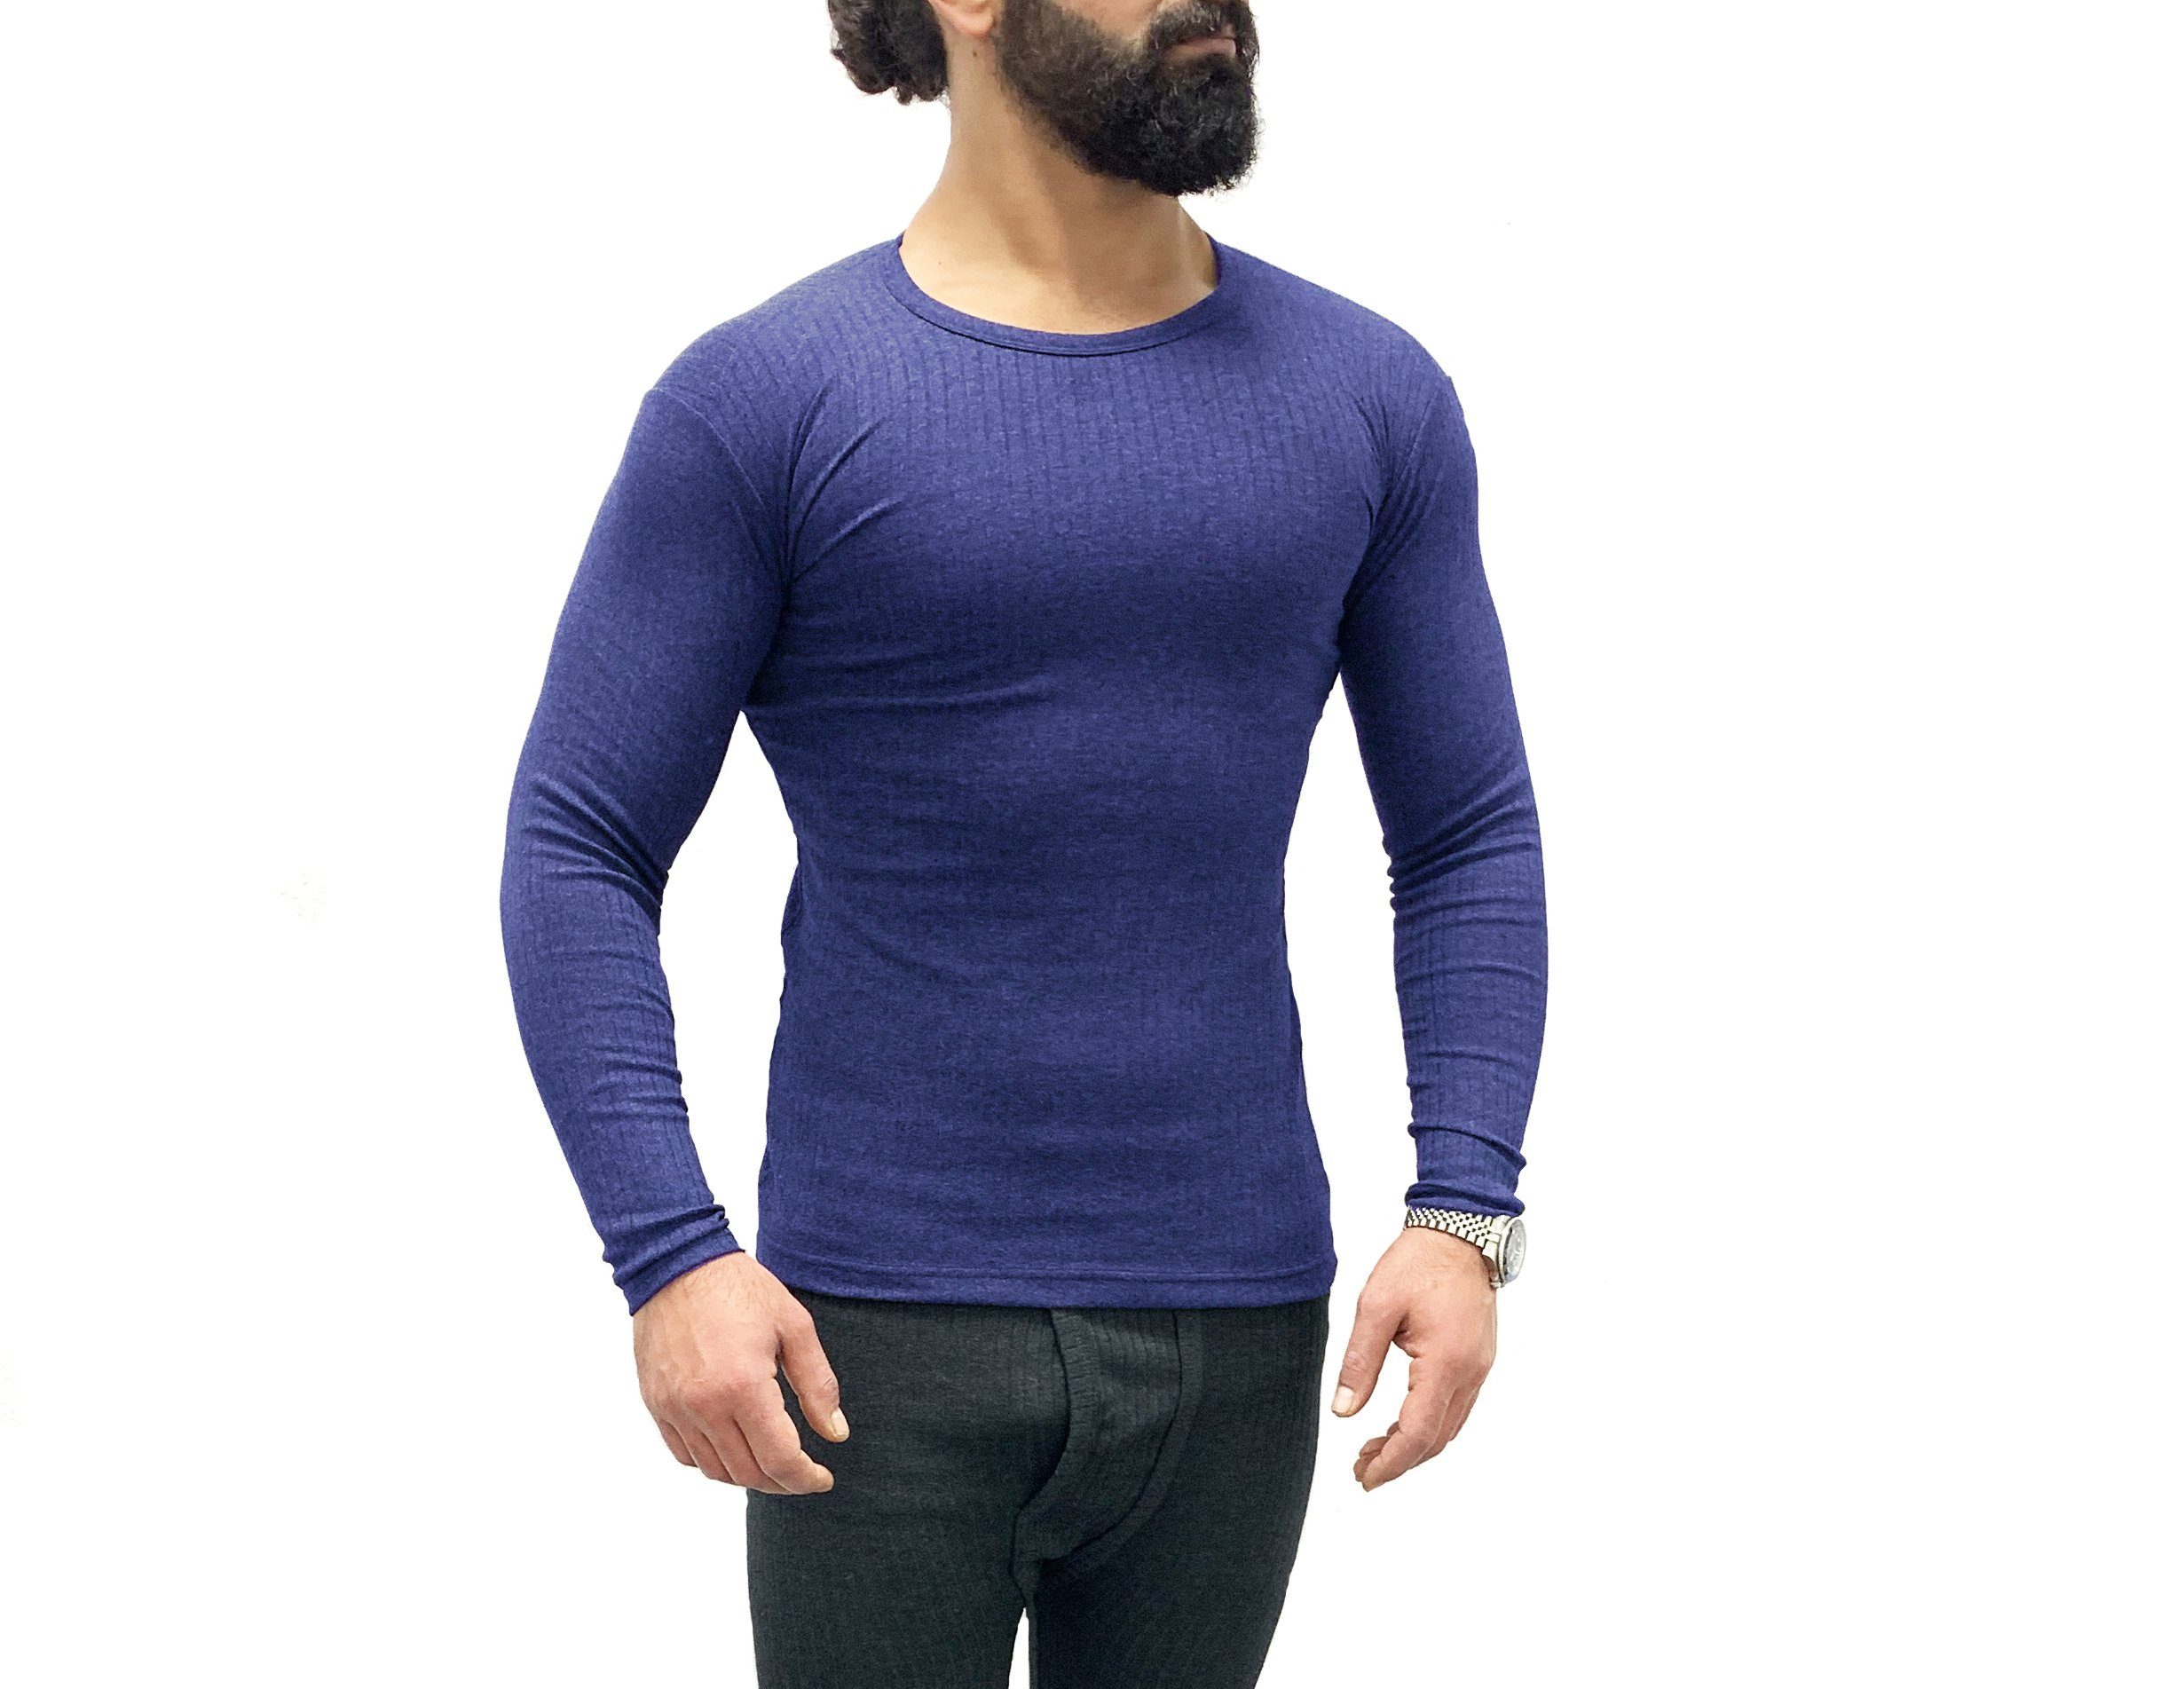 blau Herren weich, für elastisch langärmliges warmes Pescara Garcia Thermo-Shirt Thermounterhemd